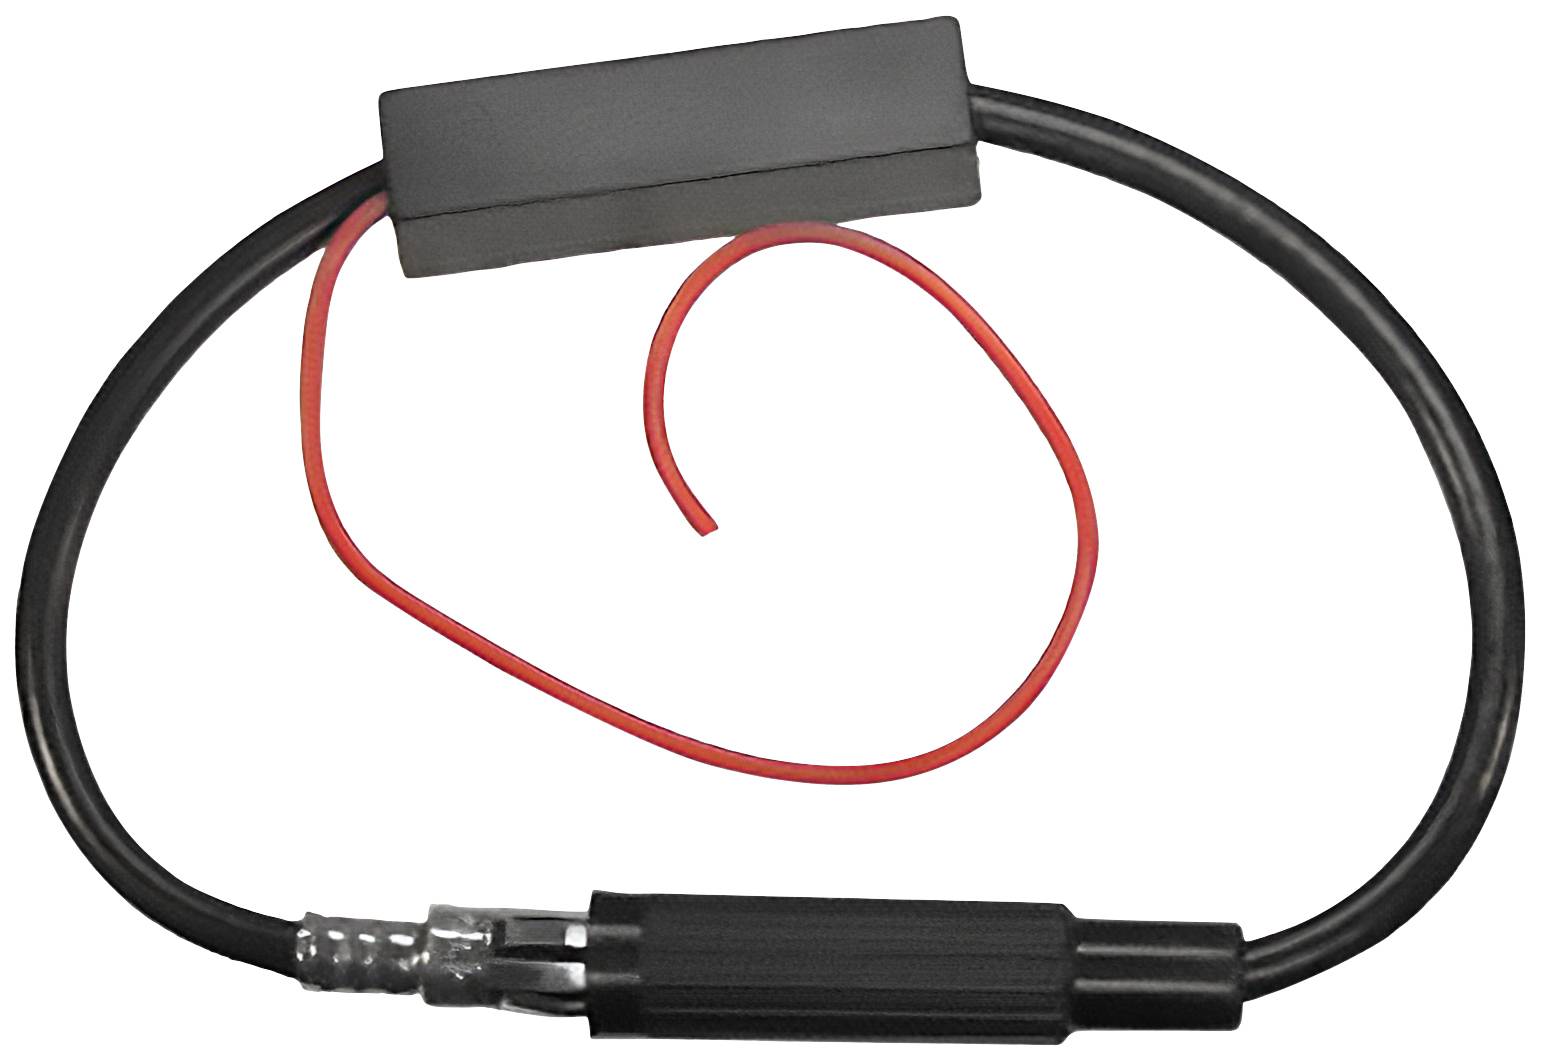 vhbw Antennenadapter von Din (m) auf Doppel-Fakra (m) kompatibel mit Audi,  Seat, VW Fahrzeugen - Antennenverstärker für kaufen